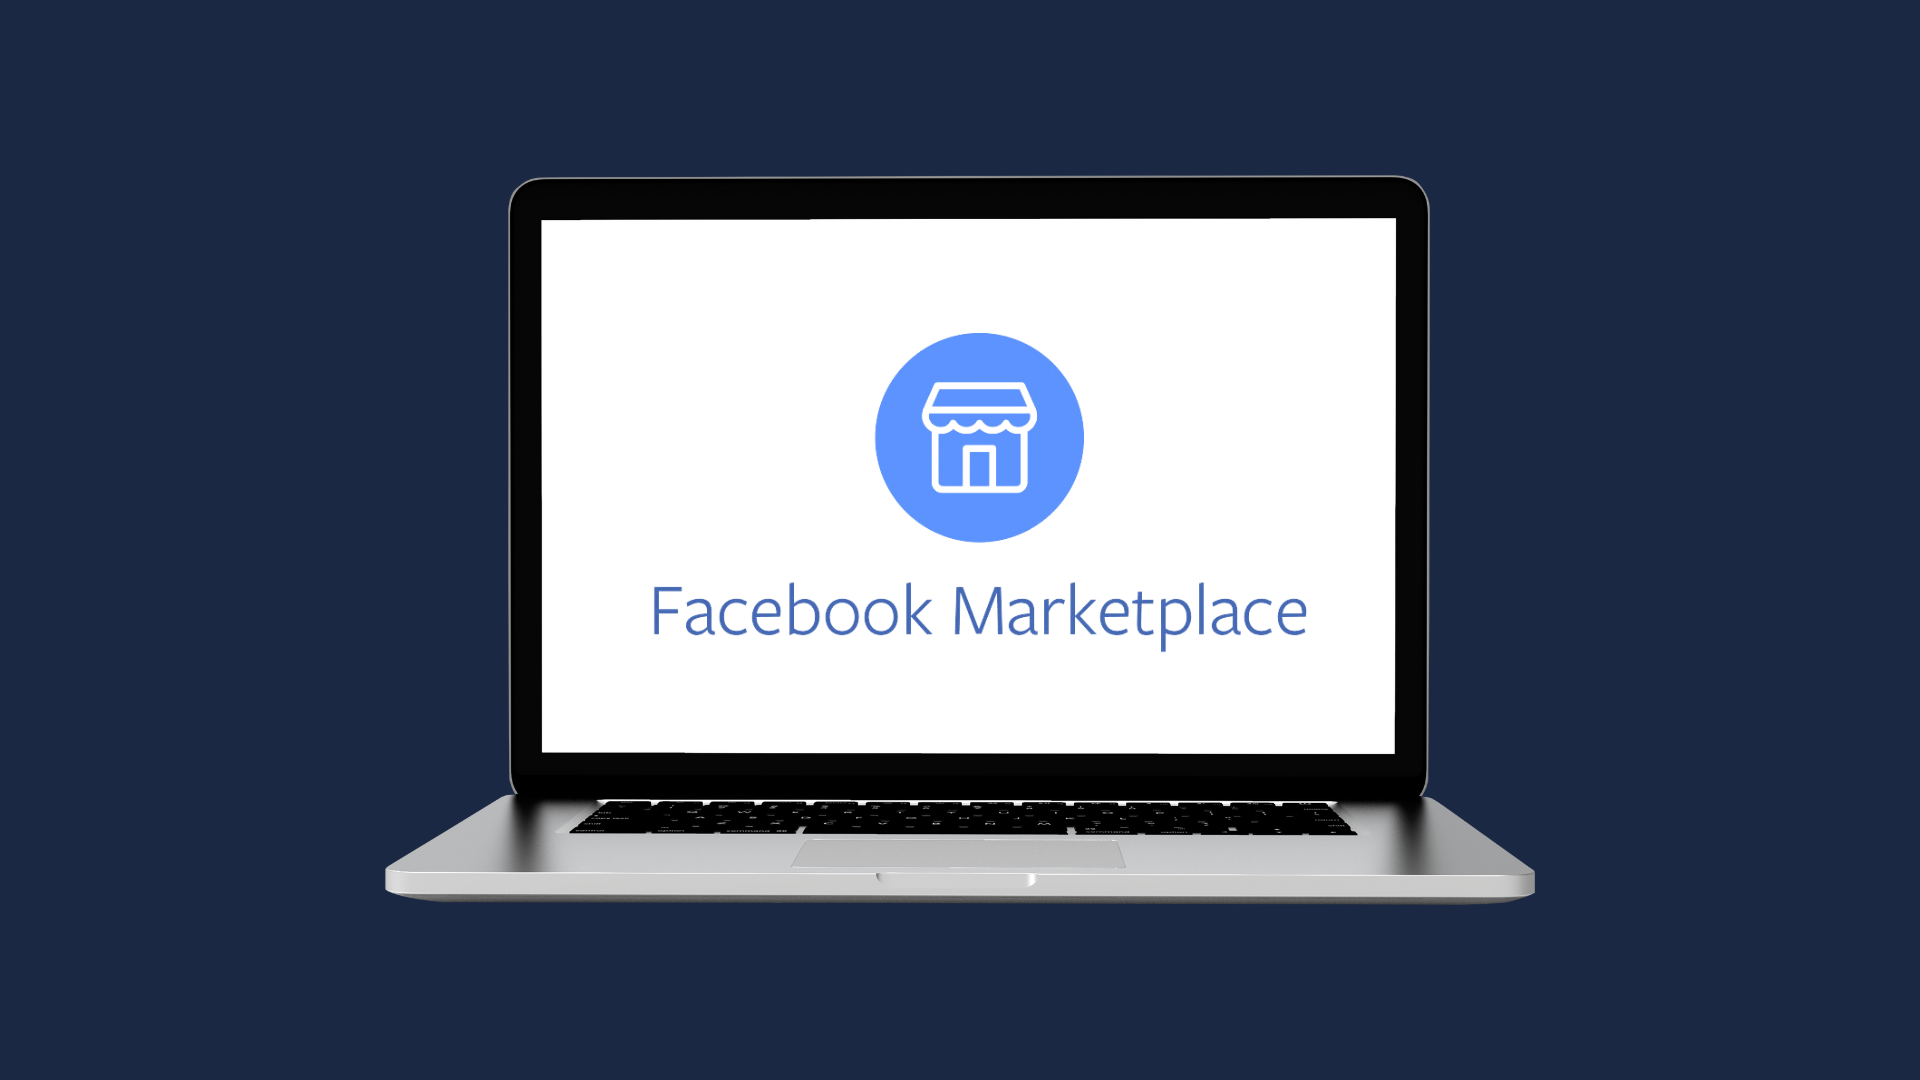 Base de datos de facebook filtrada: 200K Afectados en marketplace